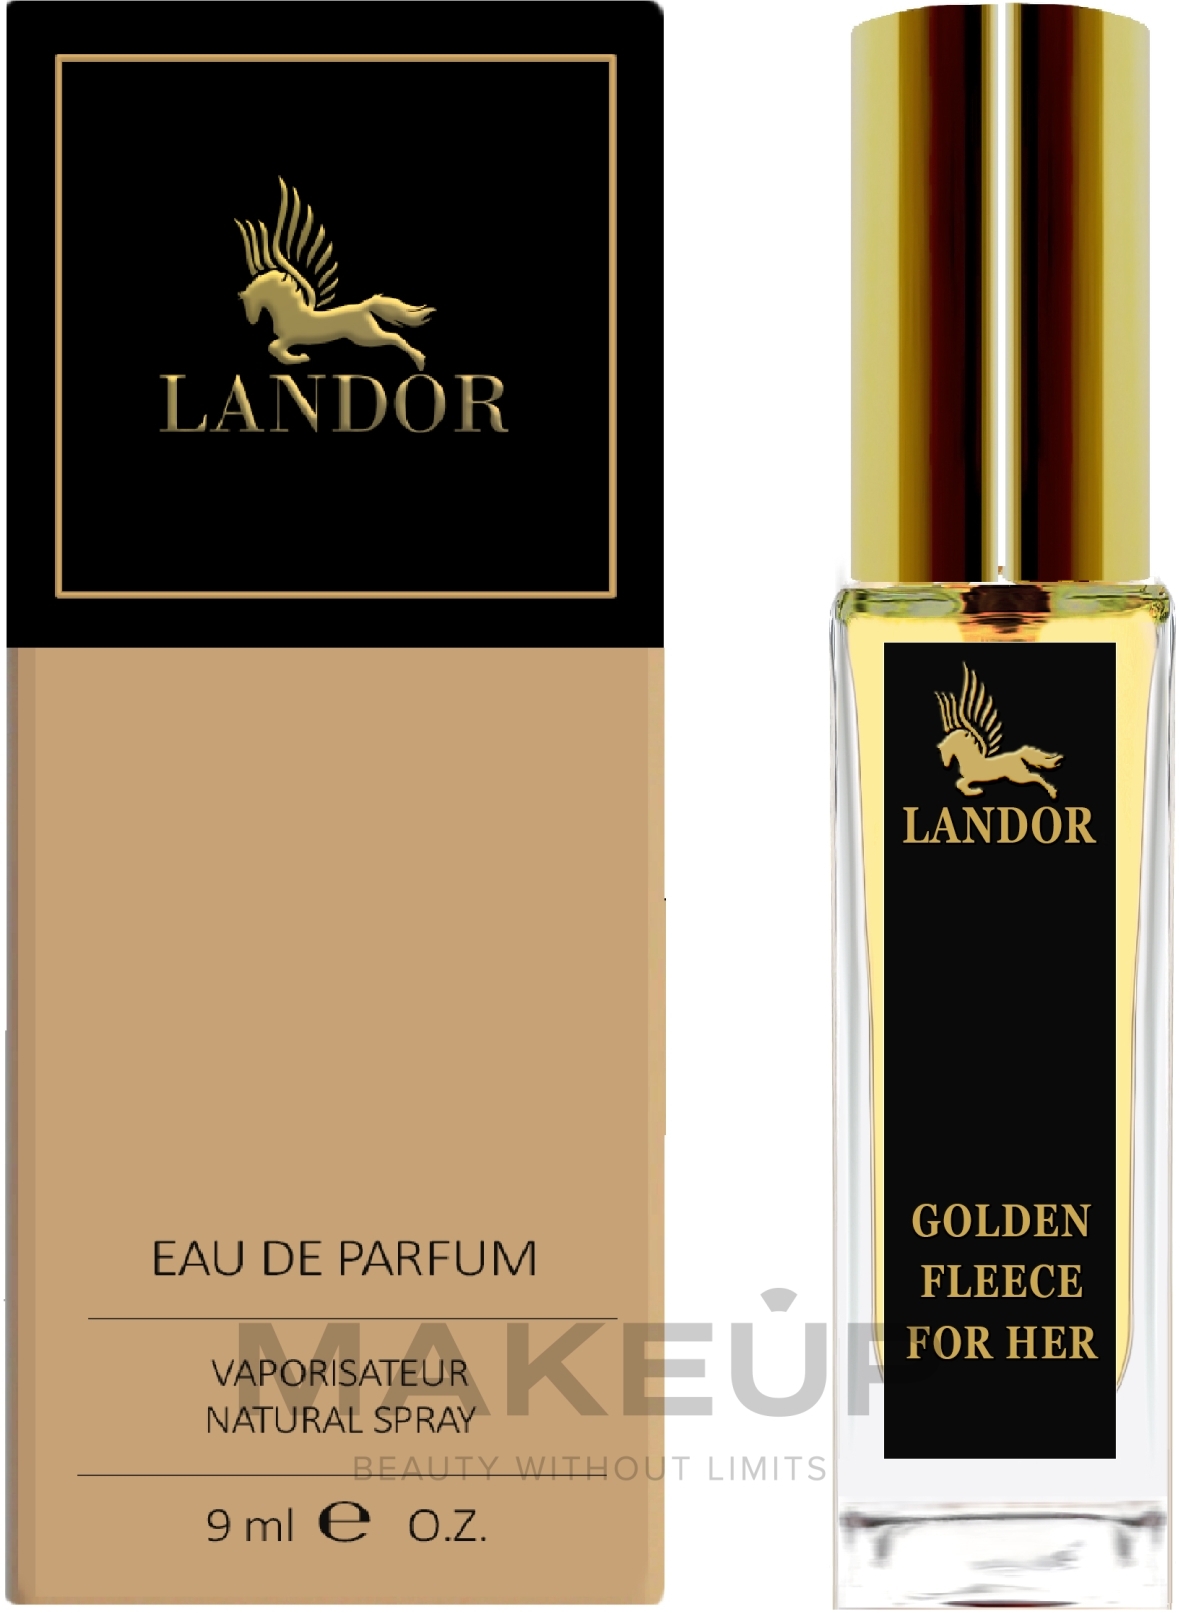 Landor Golden Fleece For Her - Парфюмированная вода (мини) — фото 9ml